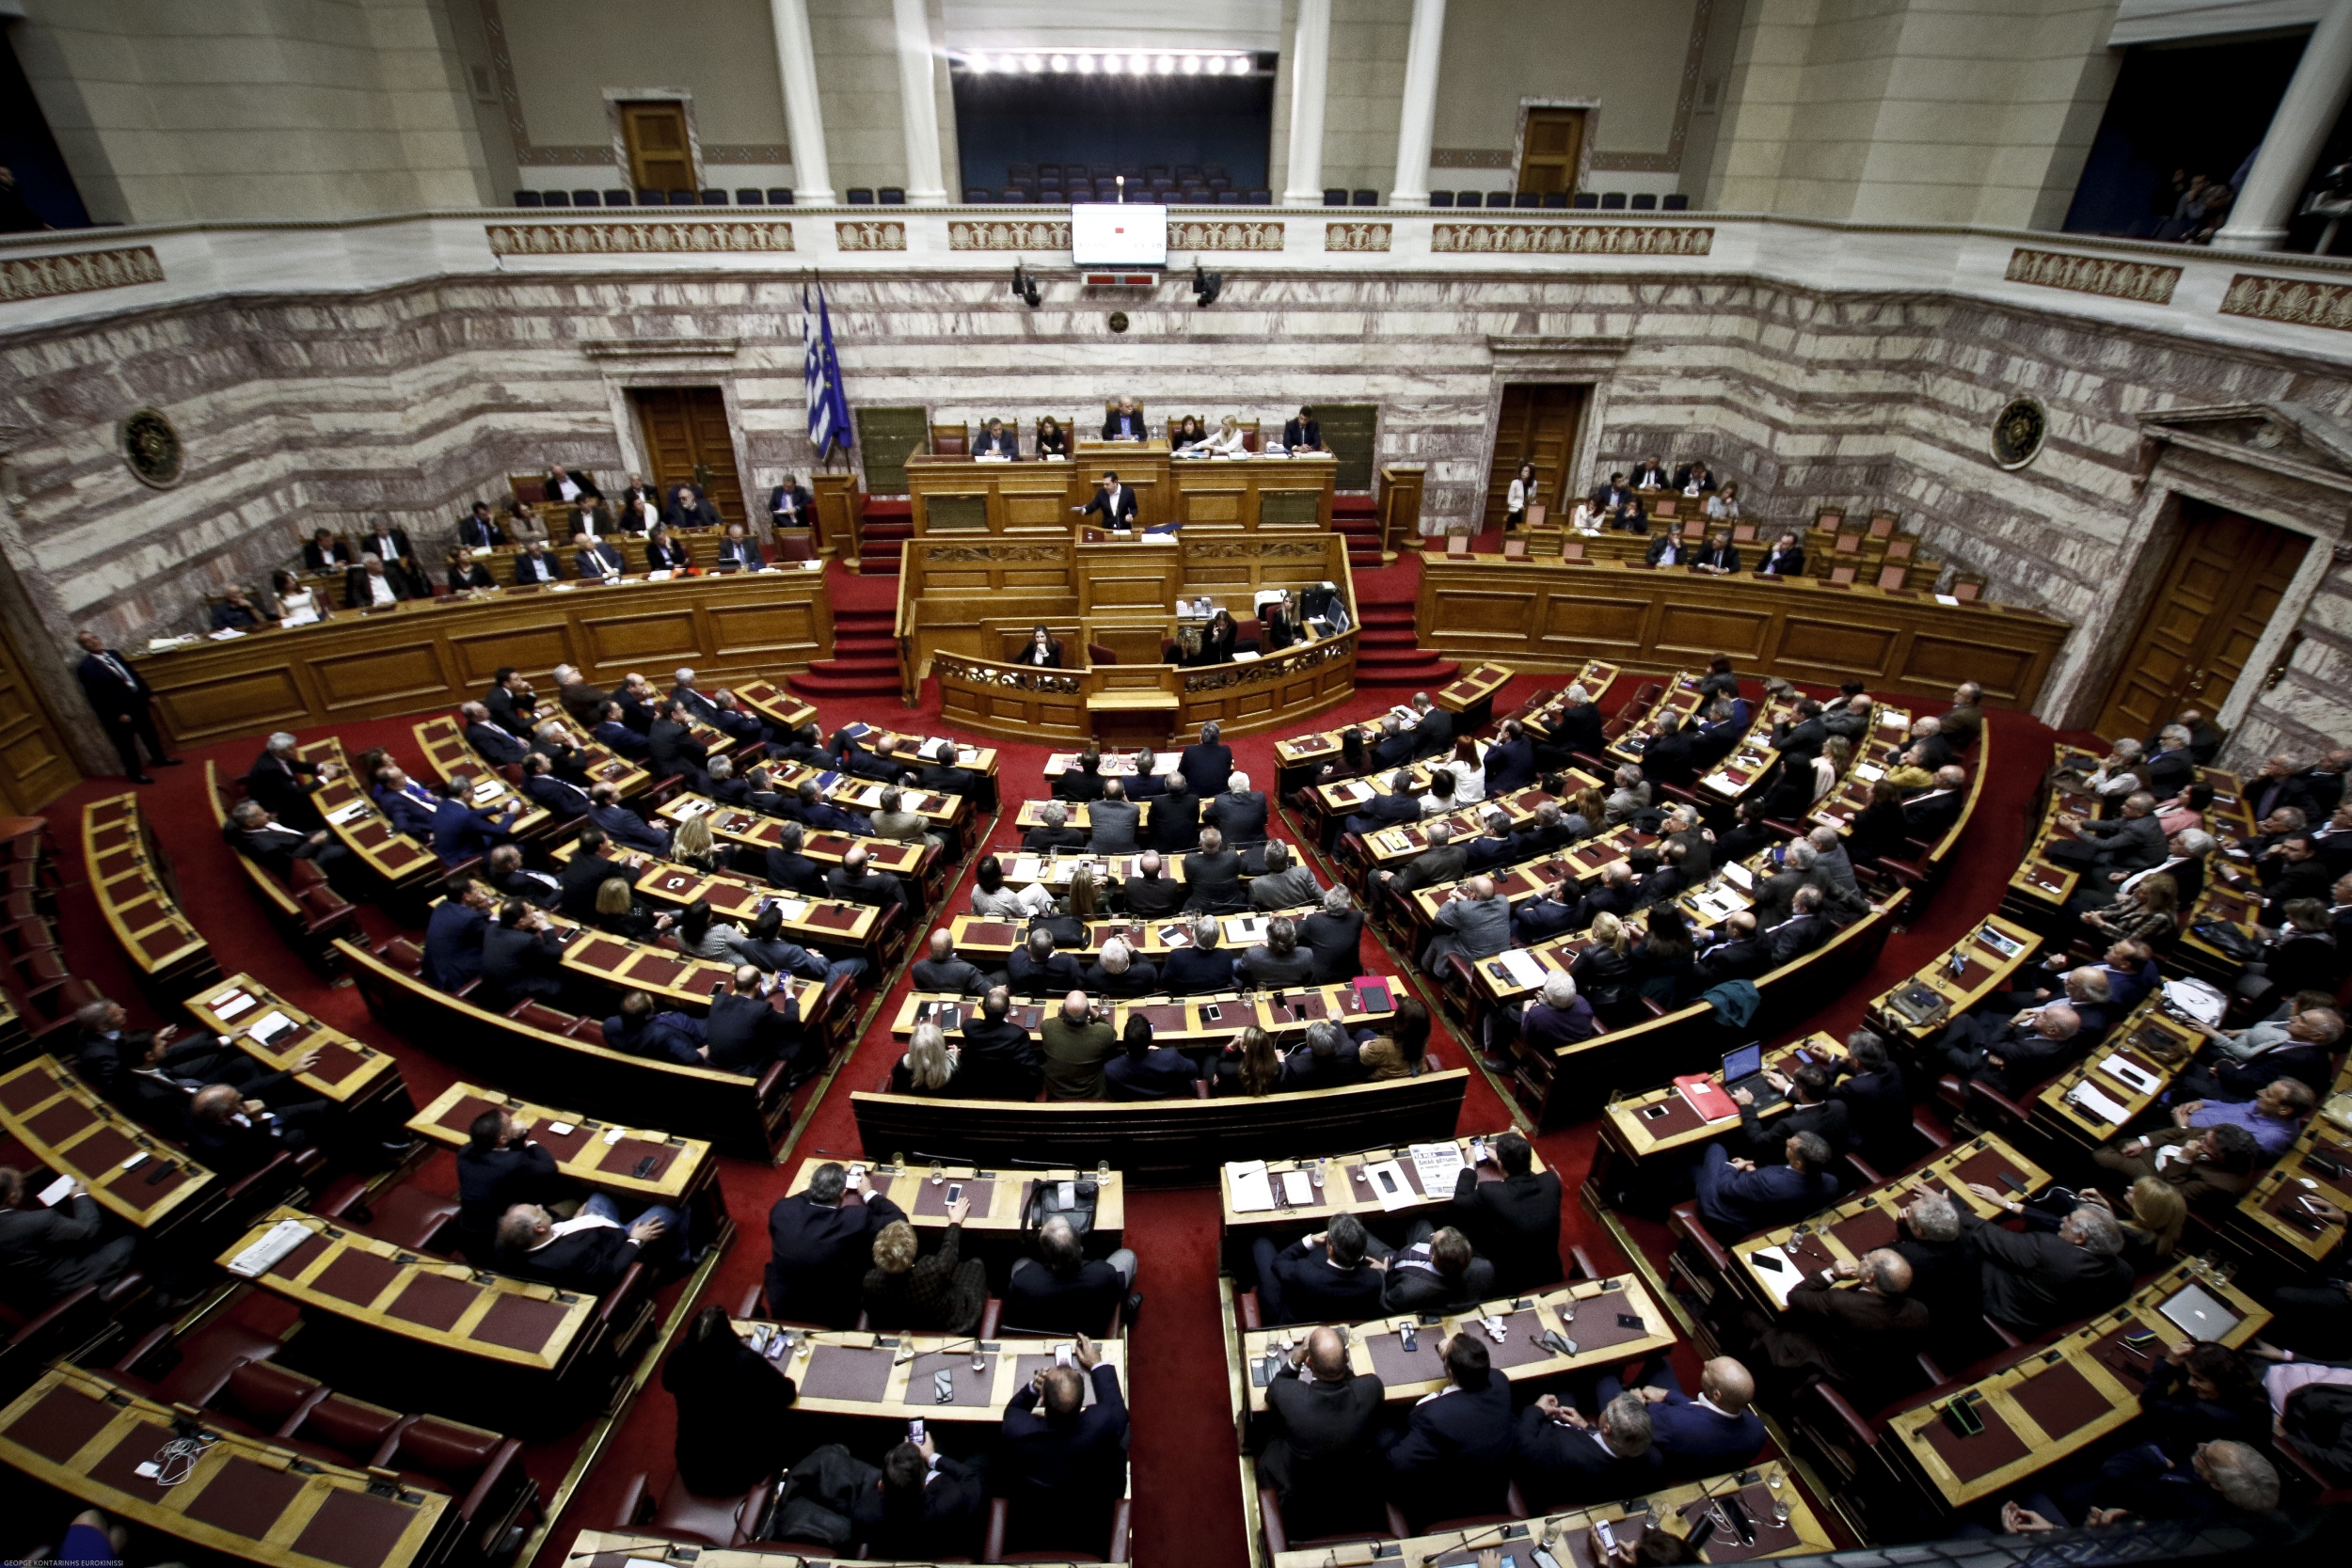 Ψηφίζεται σήμερα στη Βουλή το νομοσχέδιο για τις διαδηλώσεις – Δύο συγκεντρώσεις στο κέντρο της Αθήνας